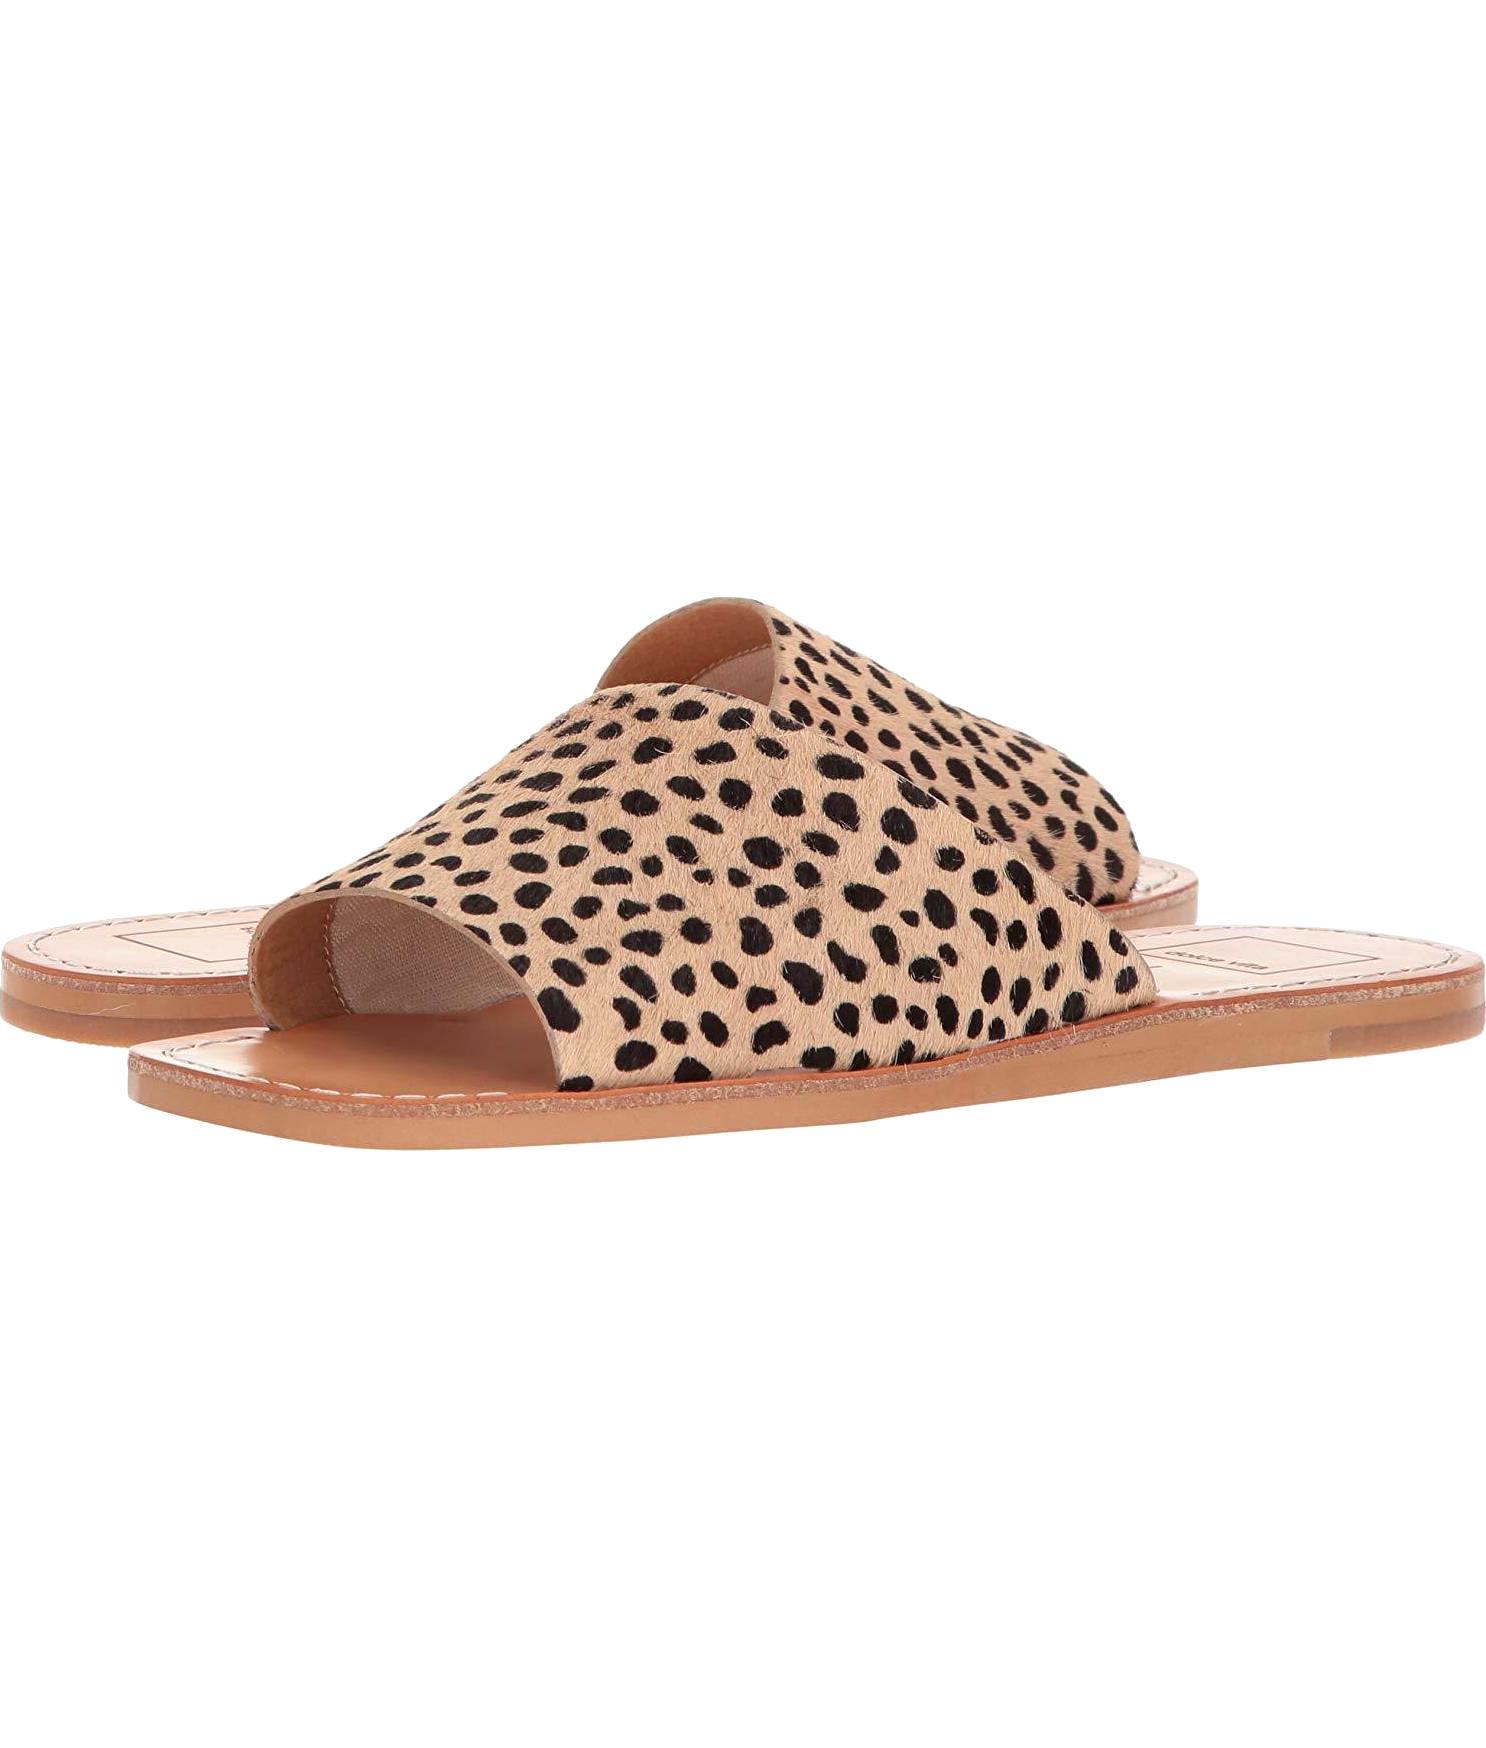 Cato Slide Sandal in Leopard Calf Hair 